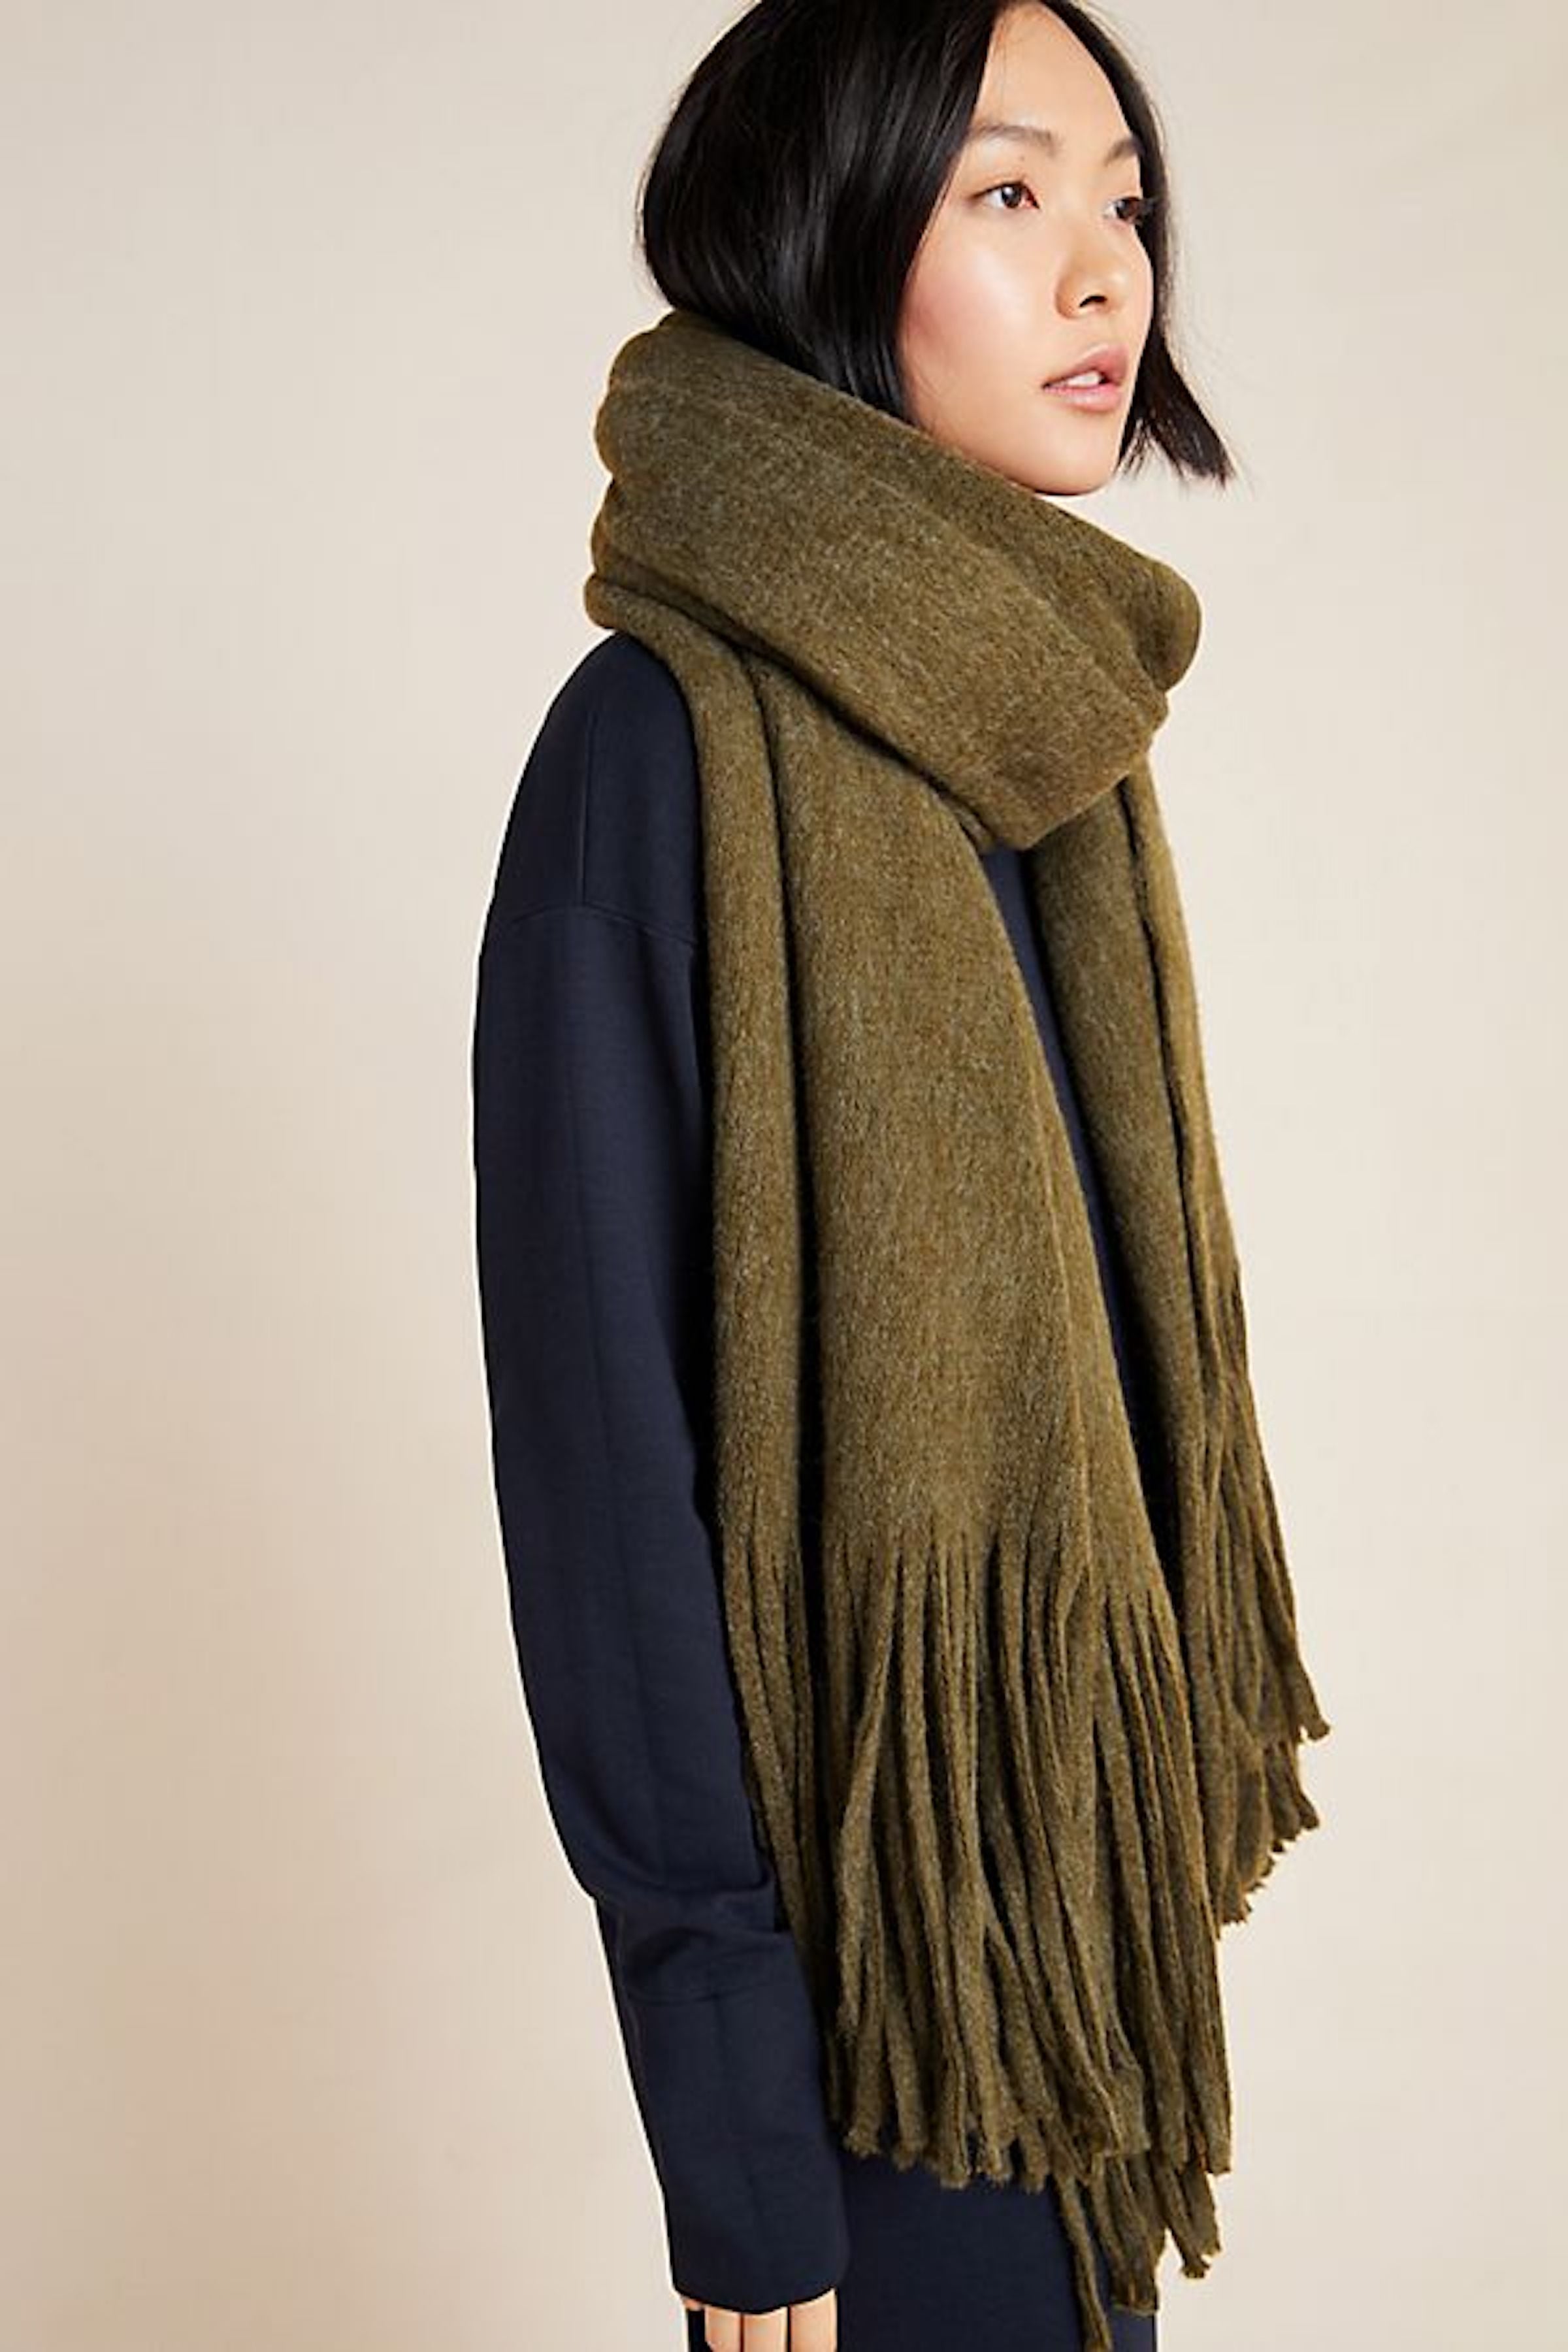 Cute Warm Cozy Blanket Scarf For Women, Winter Fashion